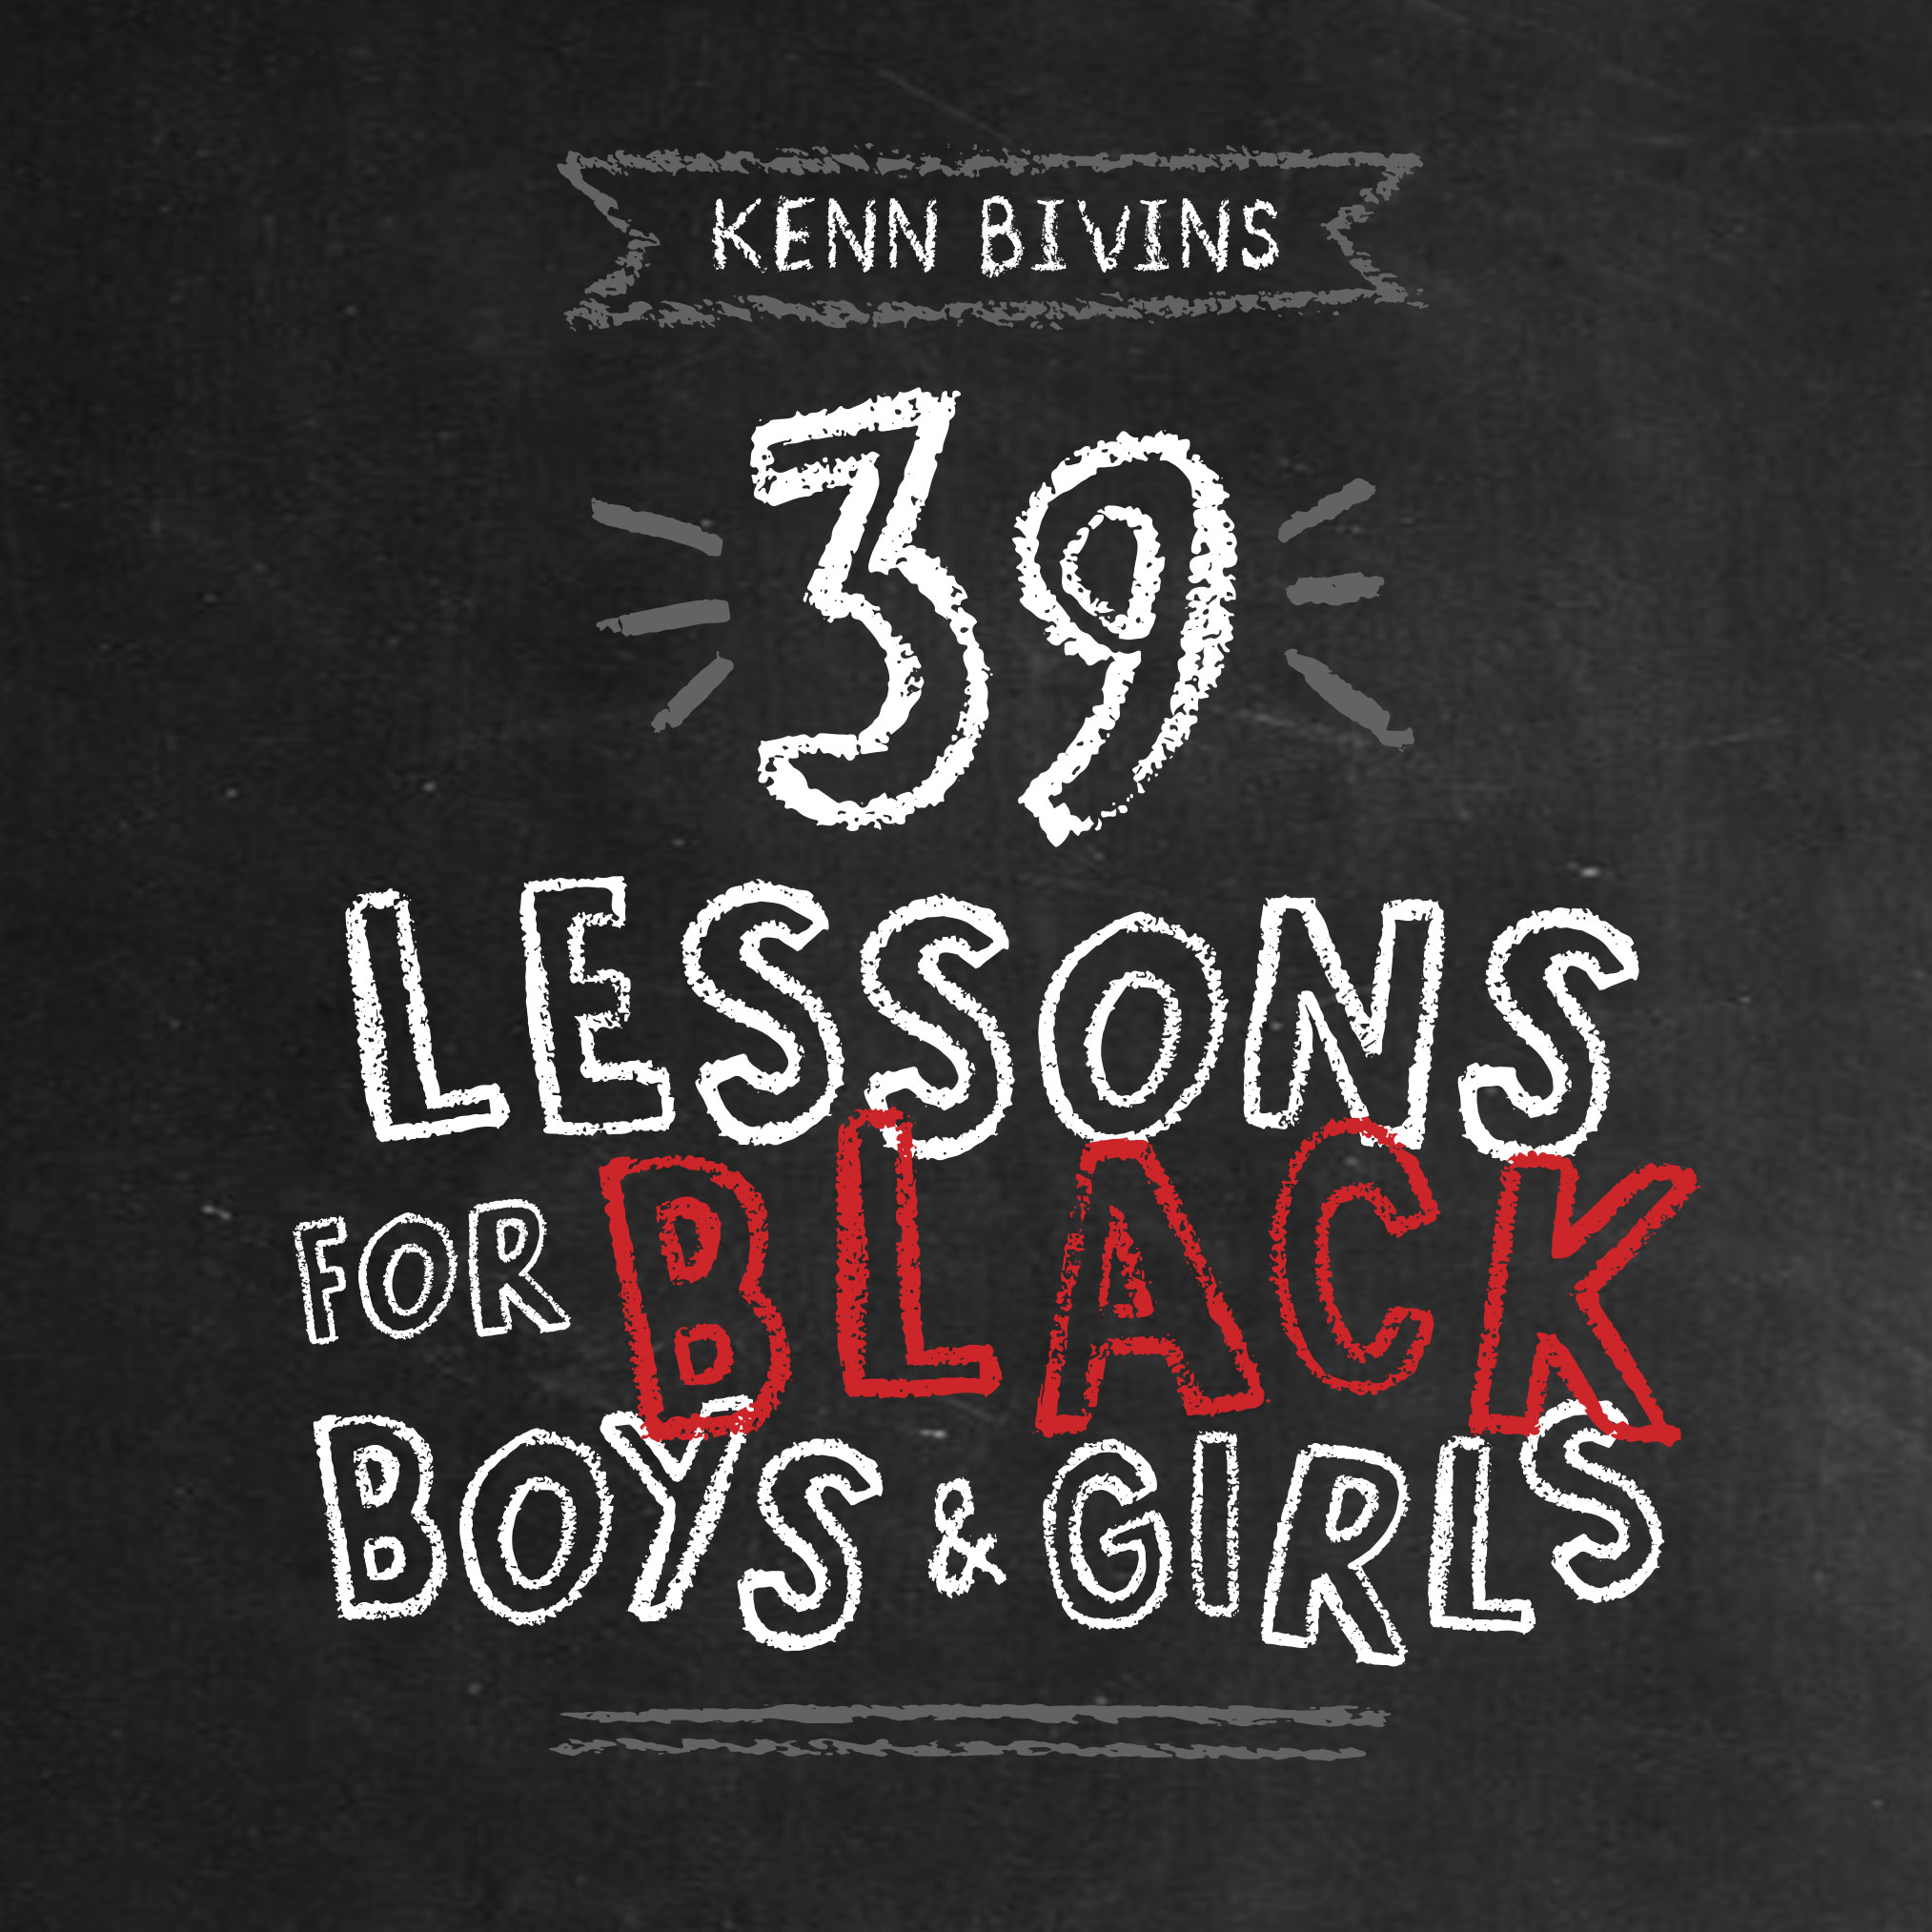 39 Lessons for Black Girls & Boys announced